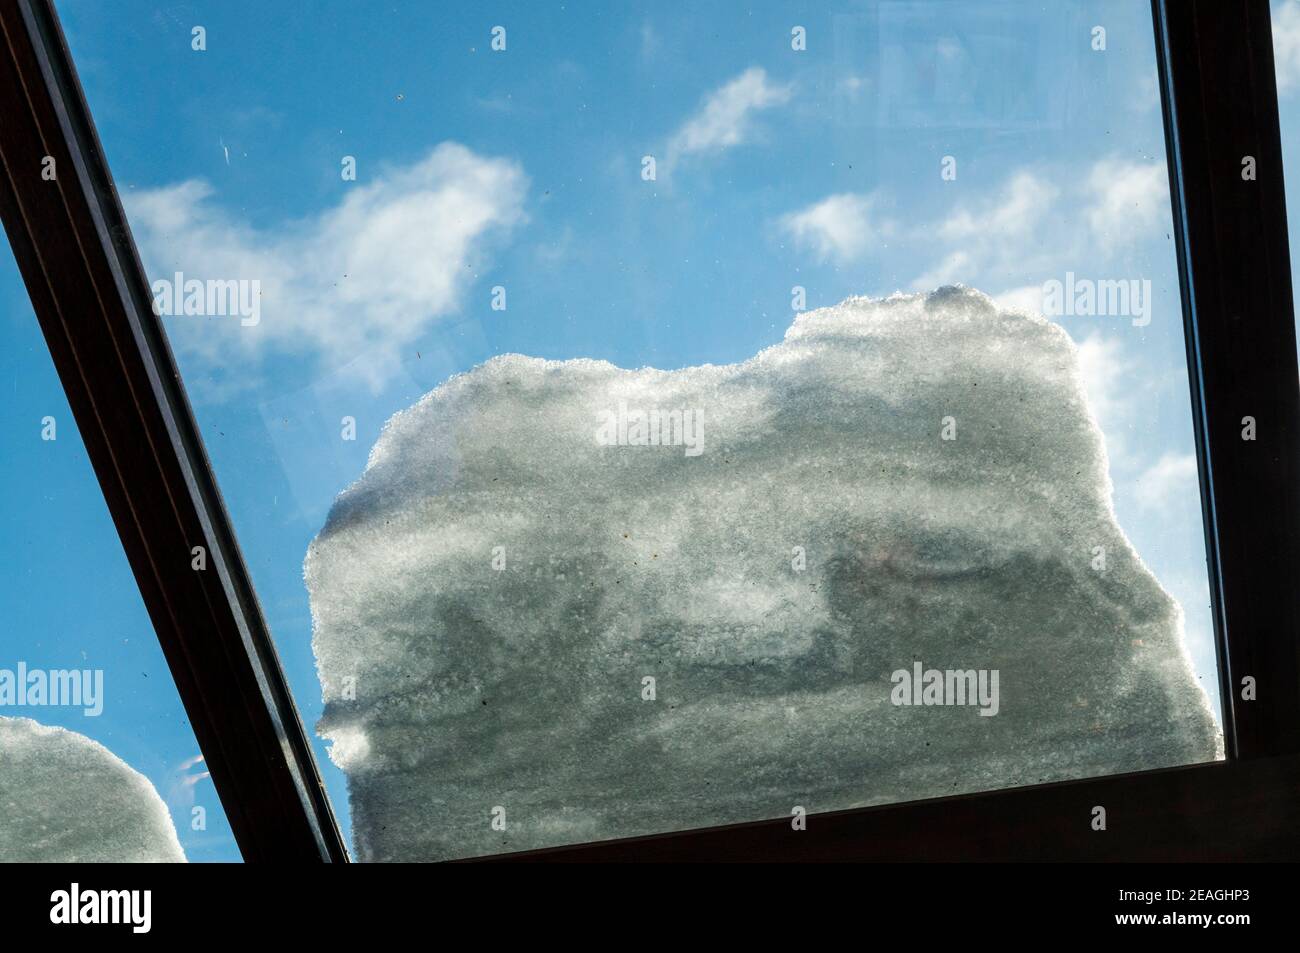 Neve sul tetto di vetro di una serra isolata con doppi vetri, vista dall'interno. Contro un cielo blu. Foto Stock